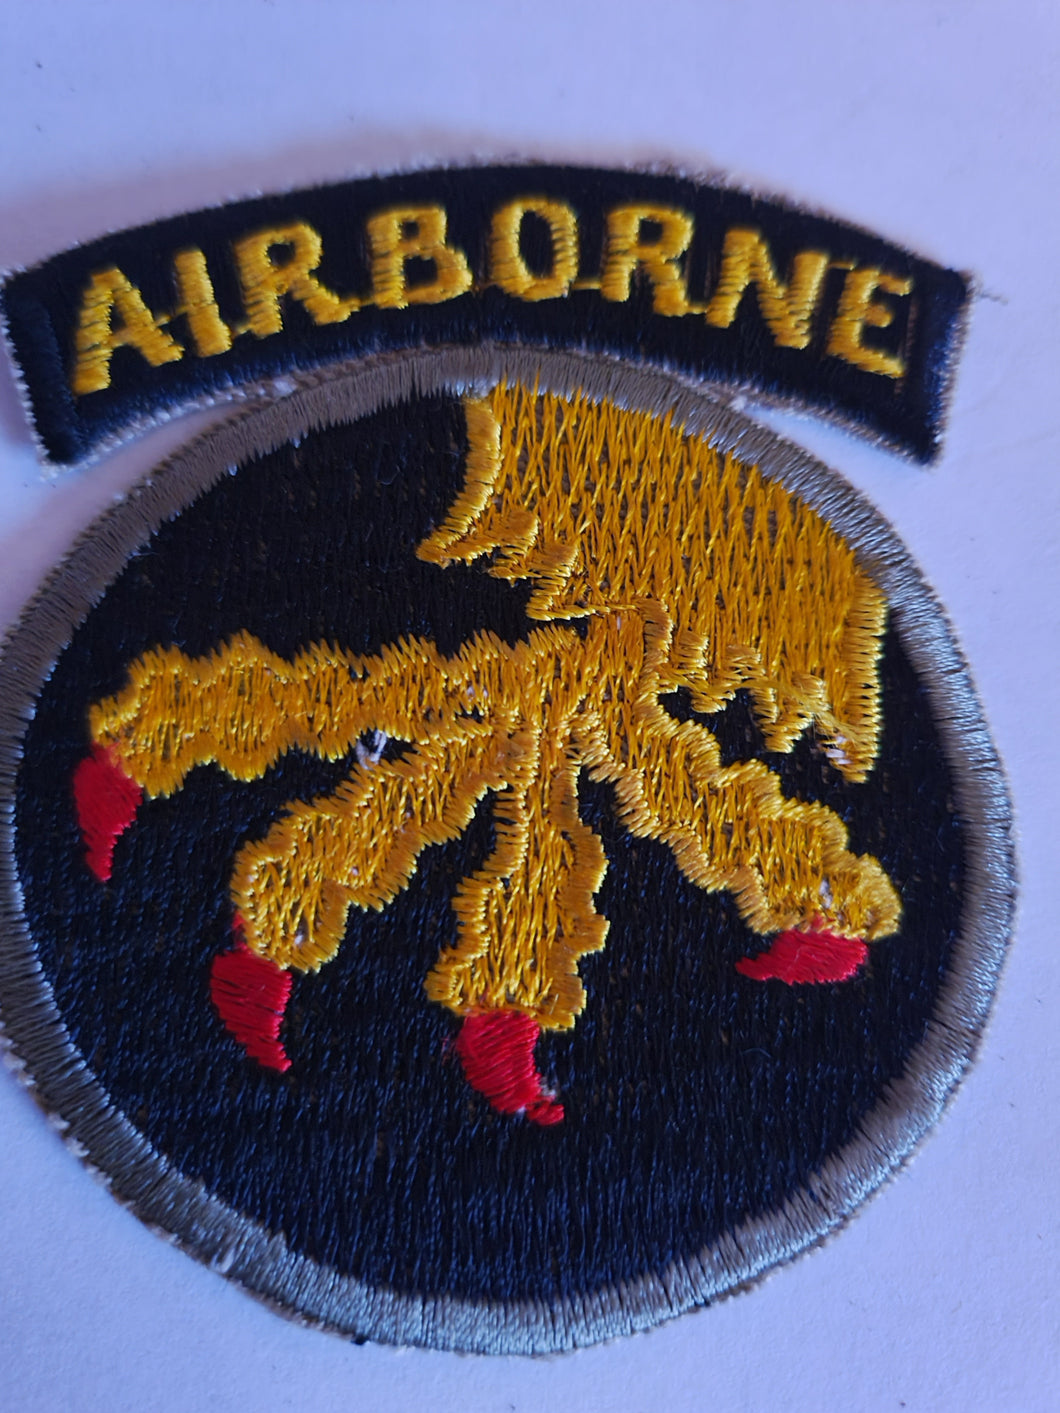 WW11/ Vietnam war era 17th Airbourne patch